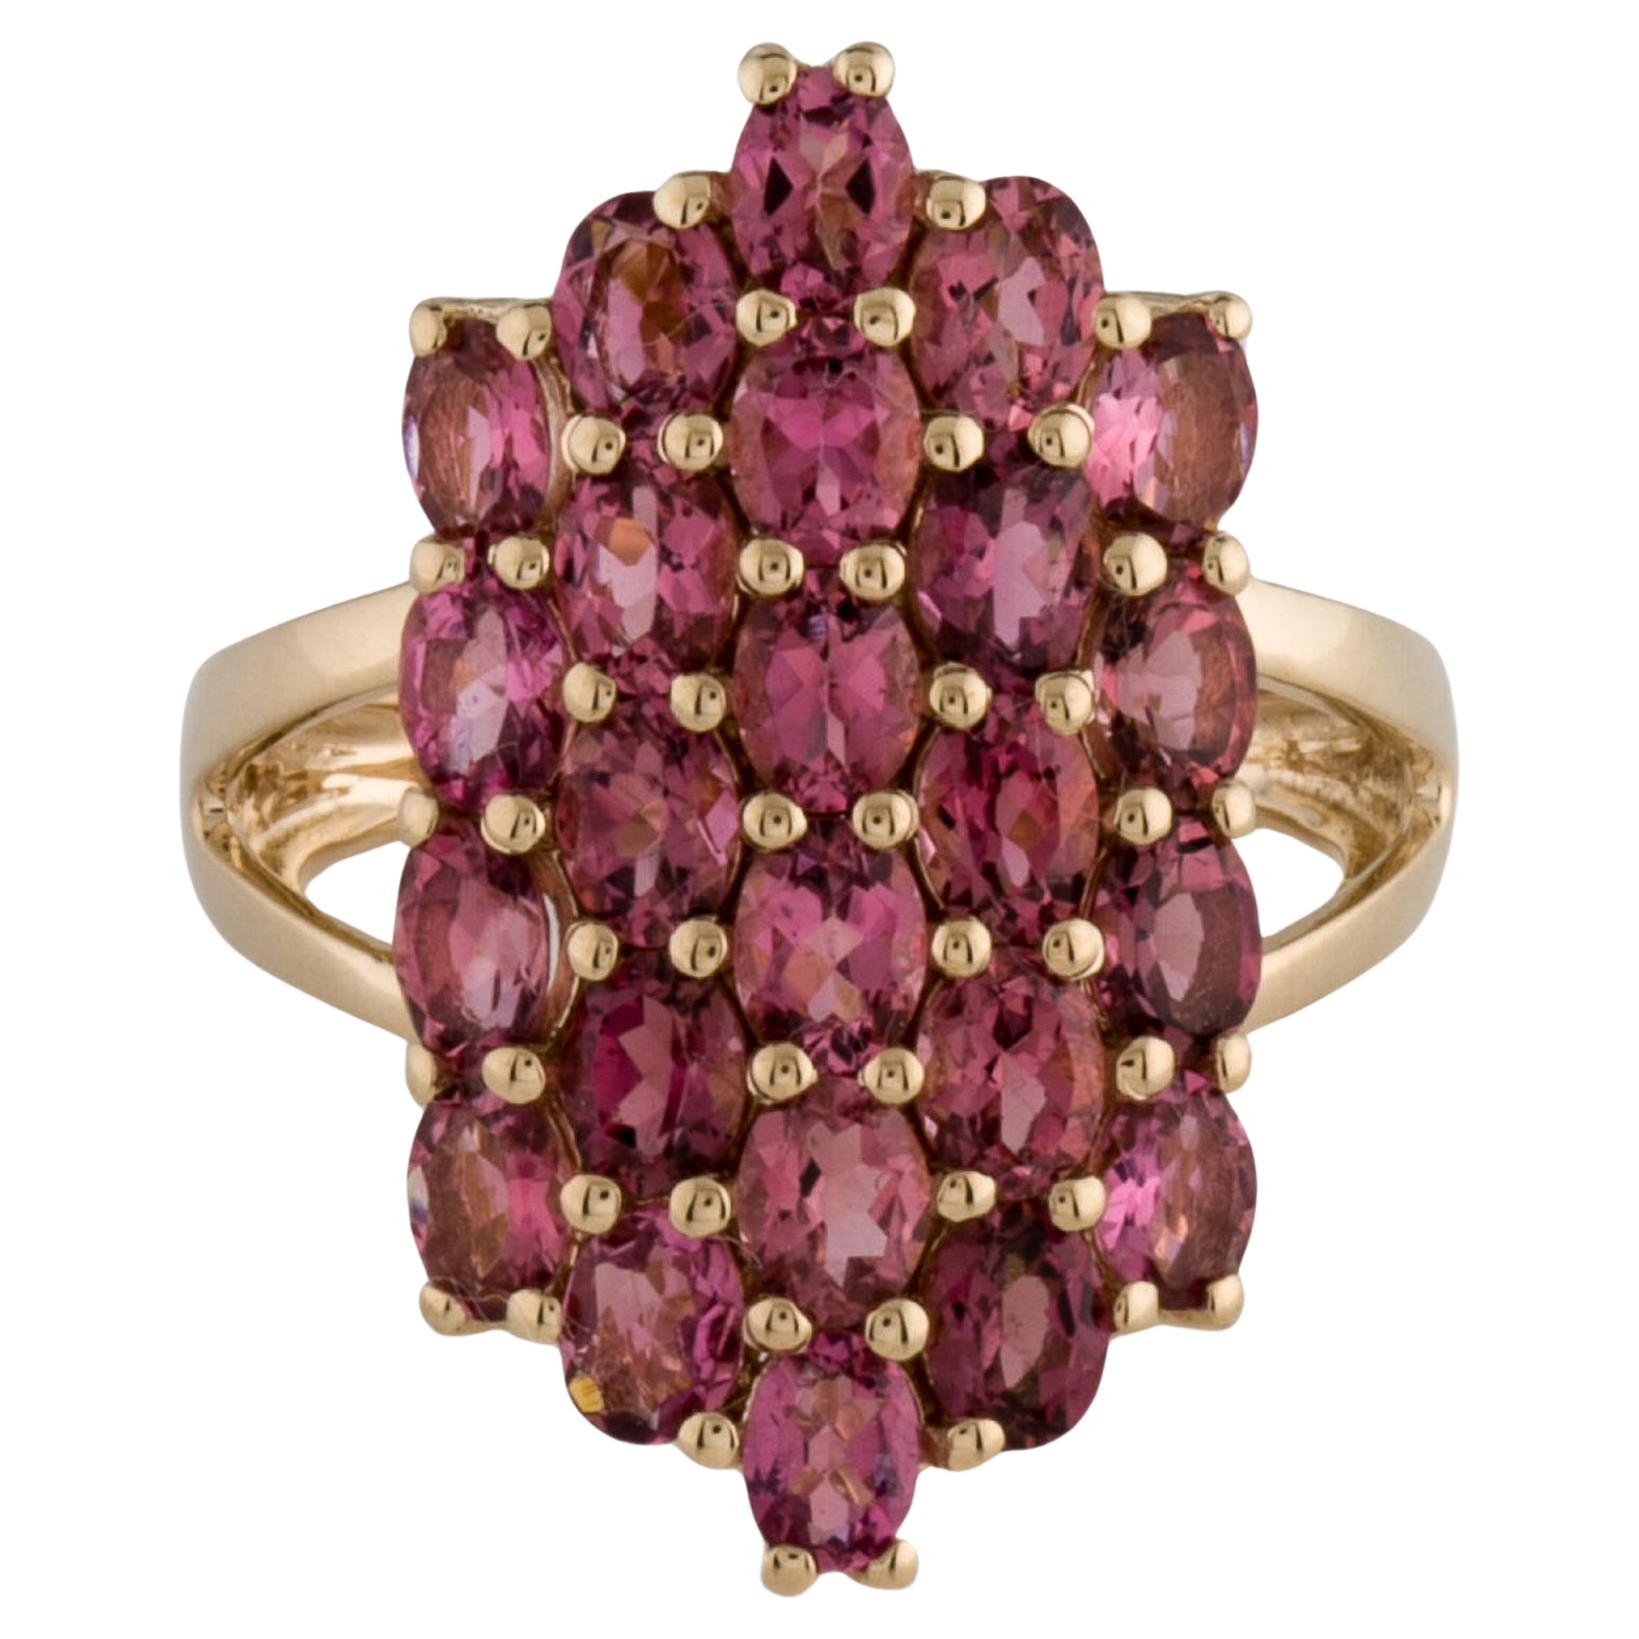 Elegant 14K Pink Tourmaline Cocktail Ring - Size 7  Vintage Gemstone Ring For Sale